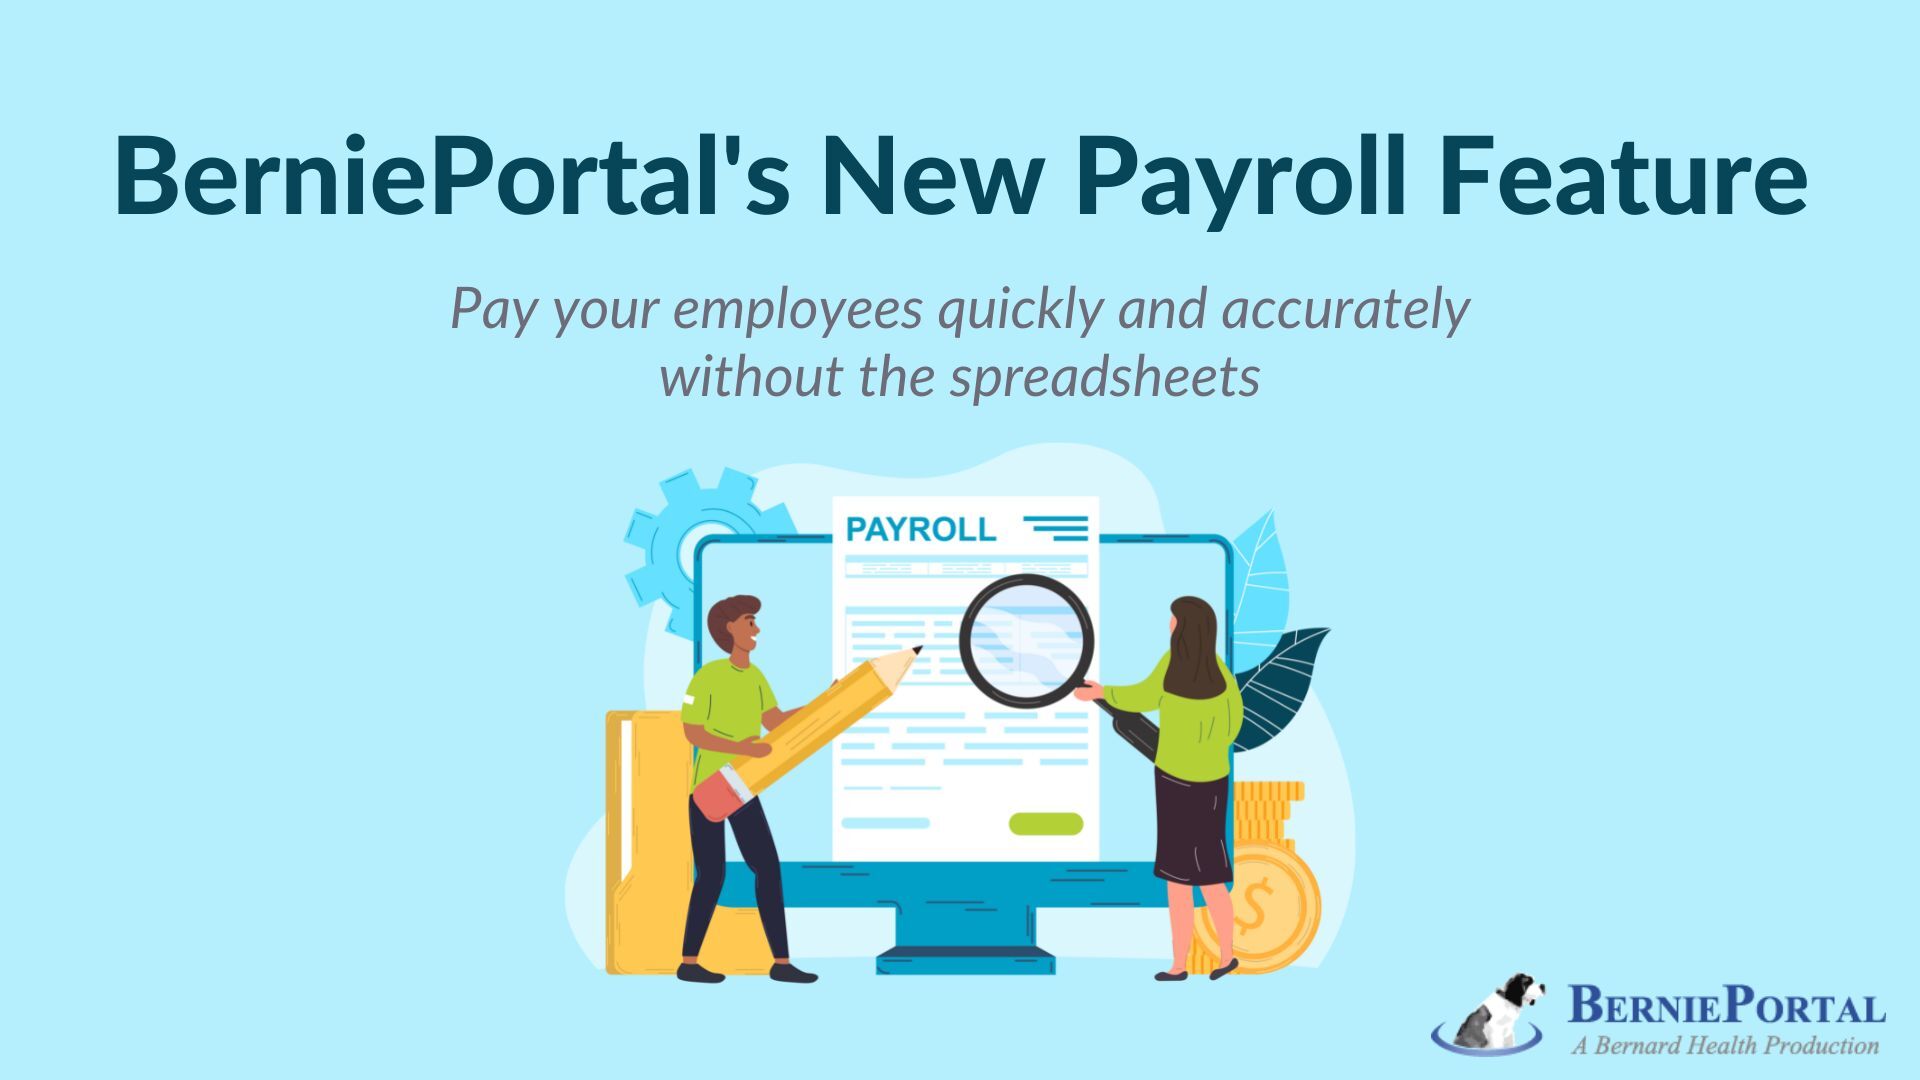 BerniePortal Announces New Payroll Feature